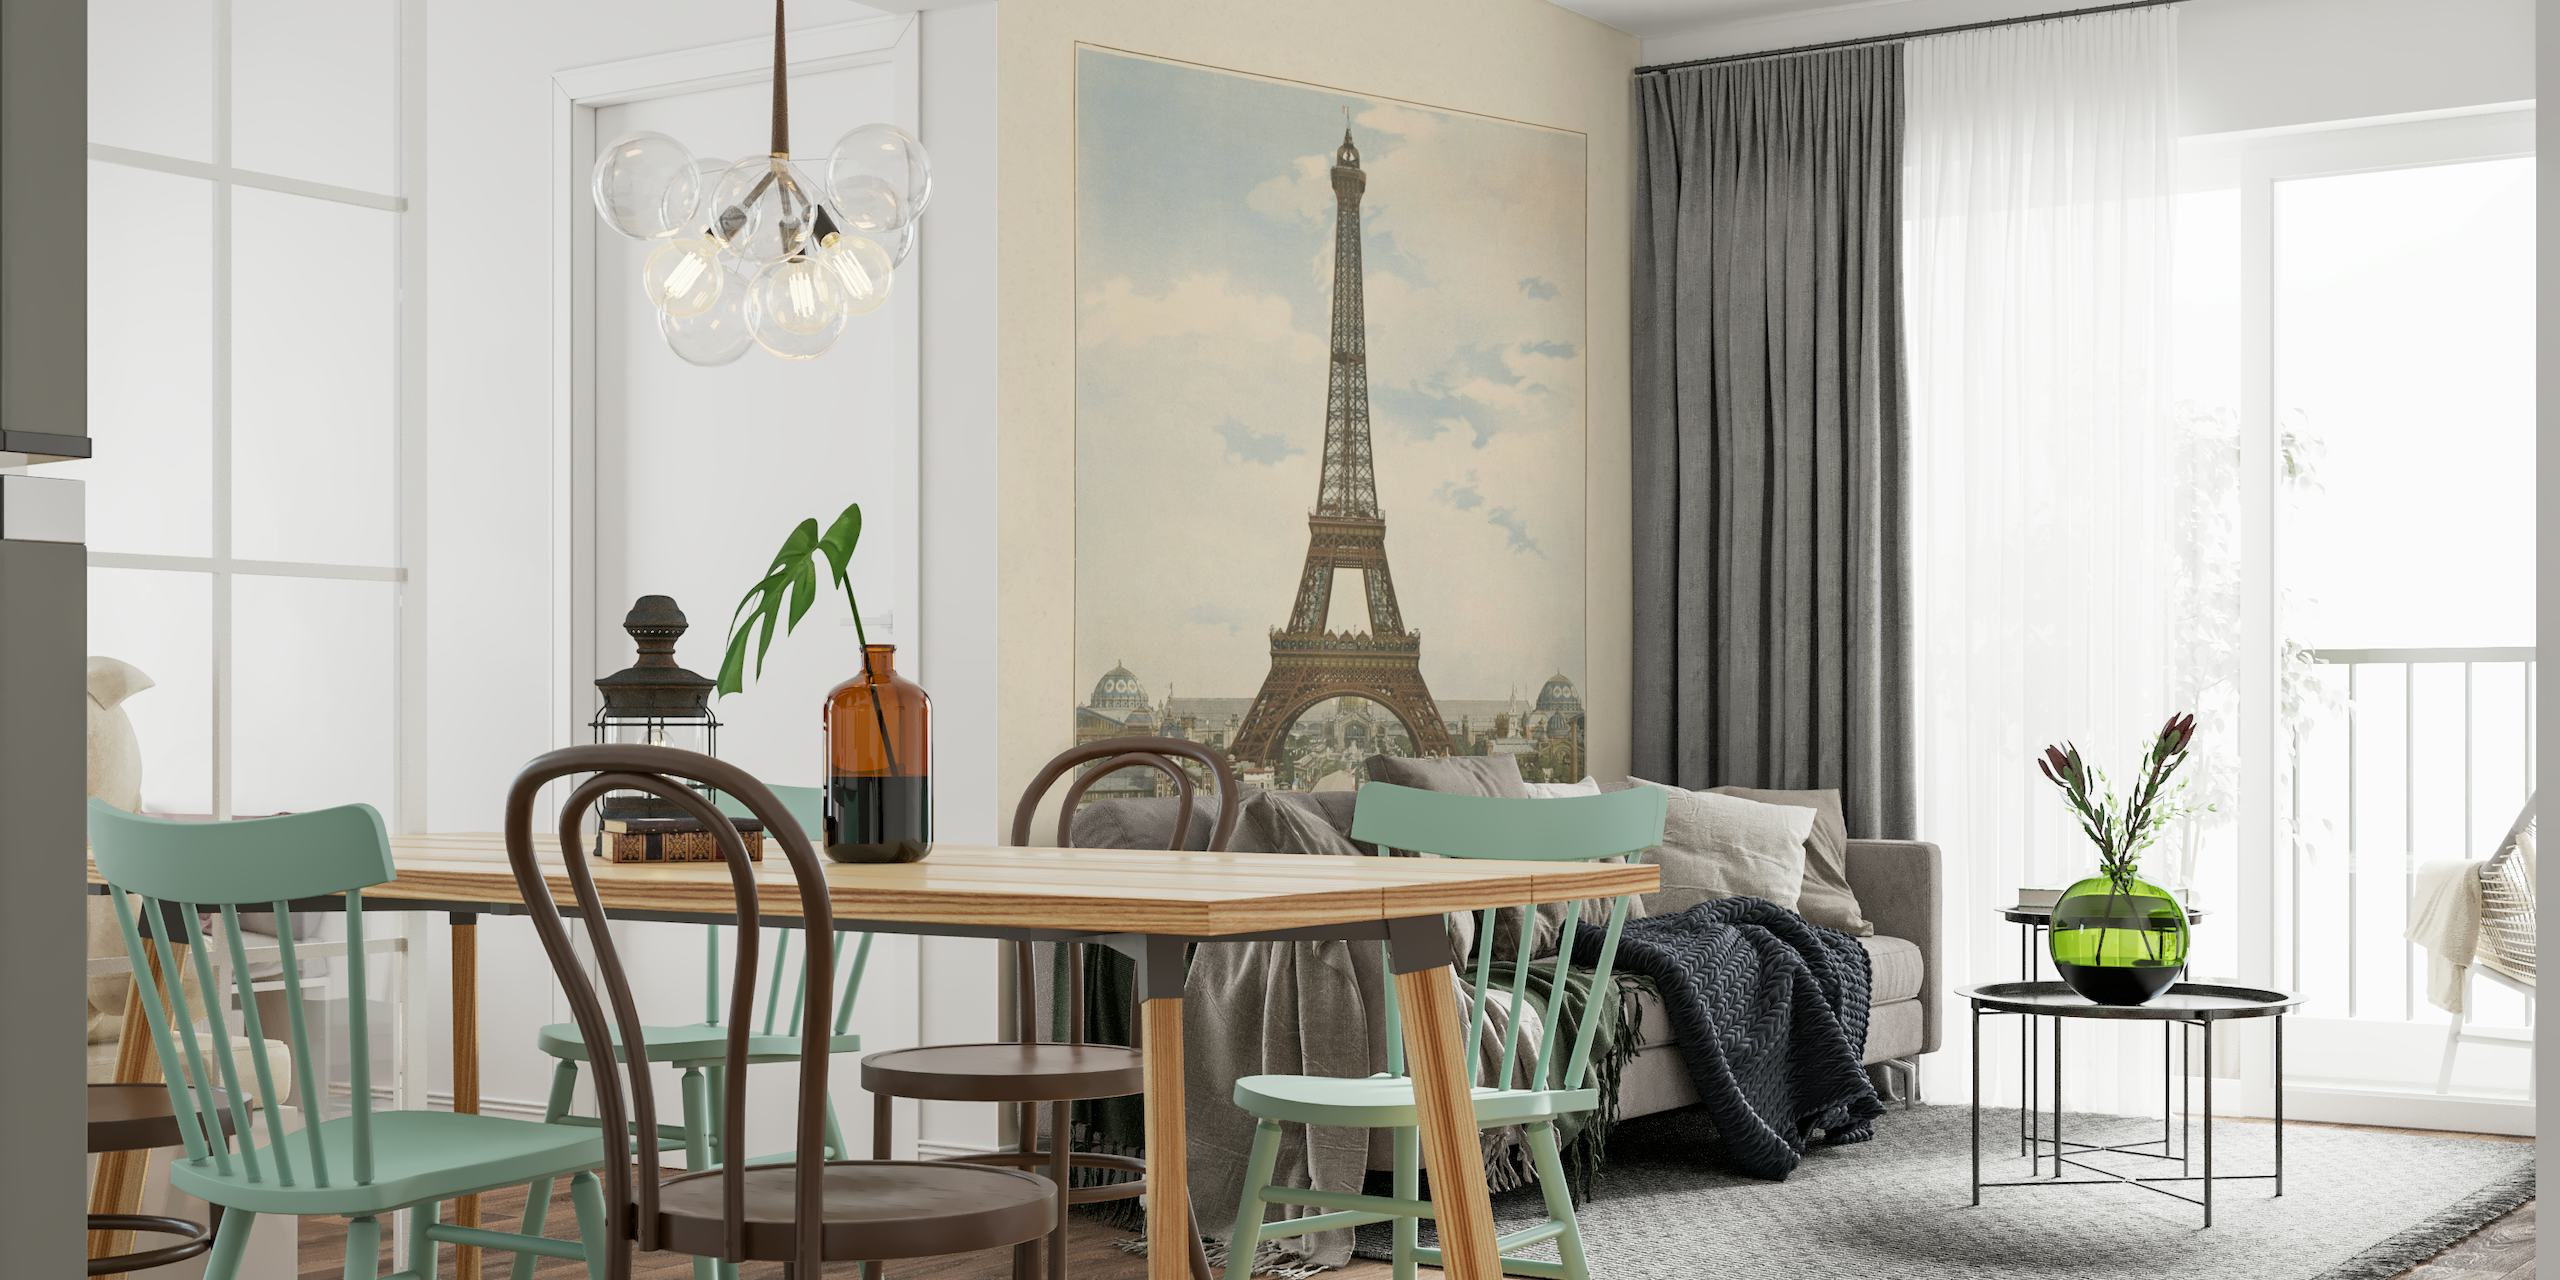 Mural de parede em estilo vintage da Torre Eiffel em Paris com arquitetura circundante sob um céu calmo.